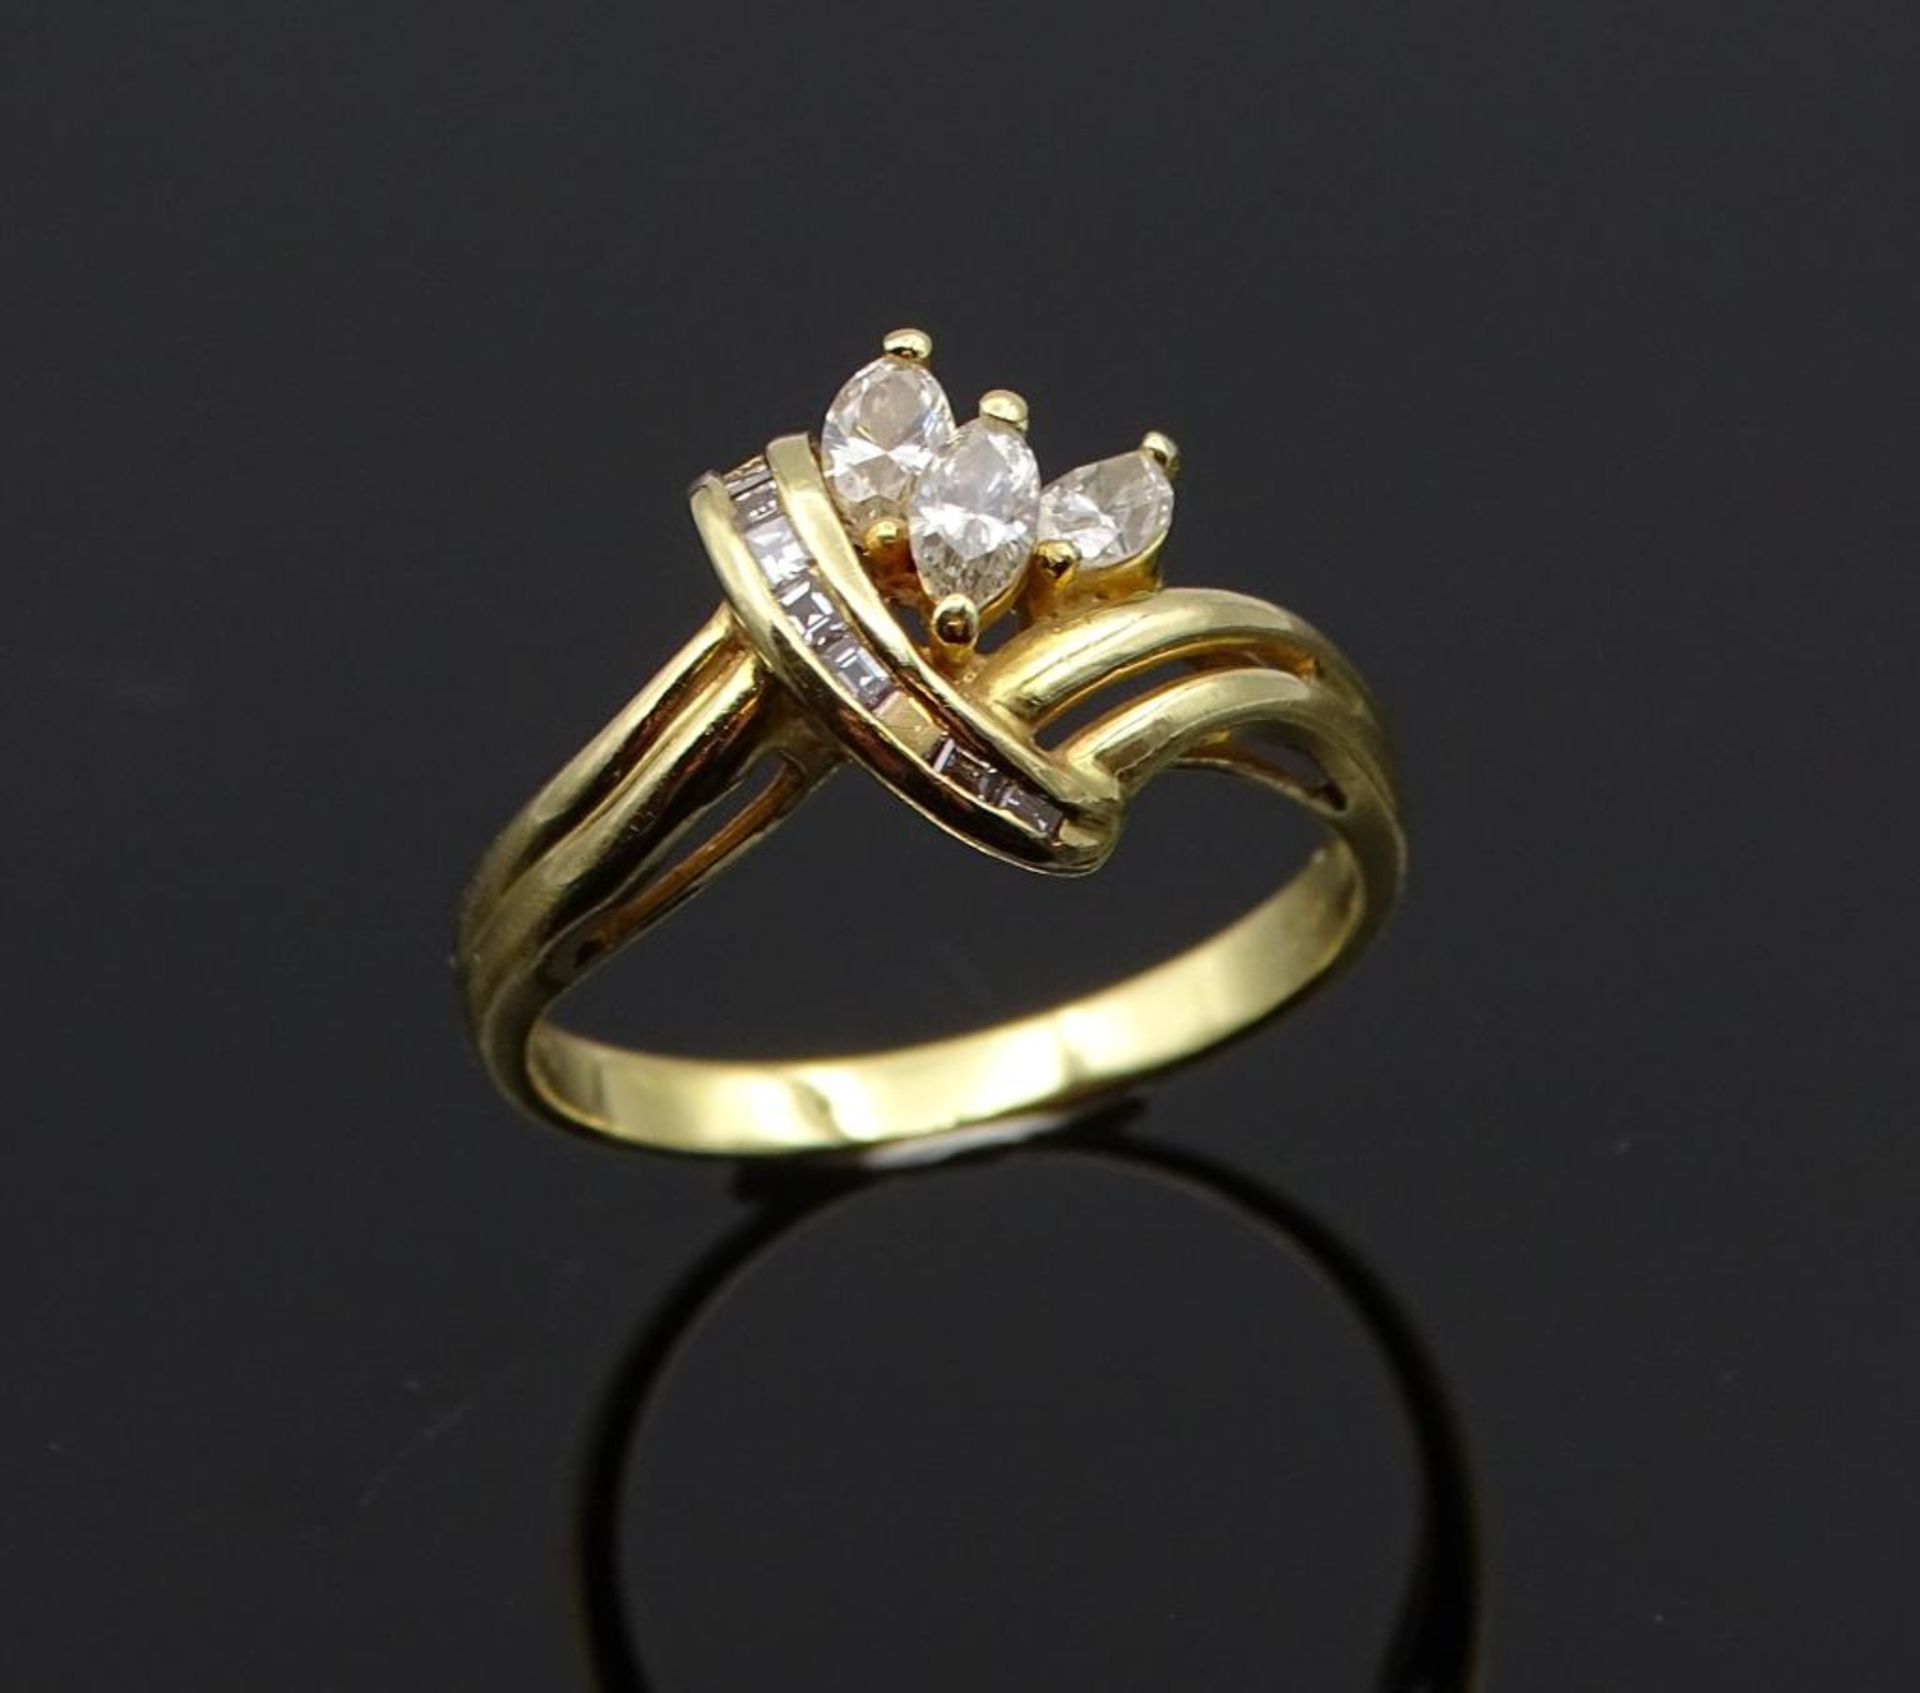 Diamant-Goldring in 750er Gelbgold, 3 Navette Diamanten W/si 1 zus. 0,39ct., + 8 Rohdiamanten W/si 1 - Bild 2 aus 7